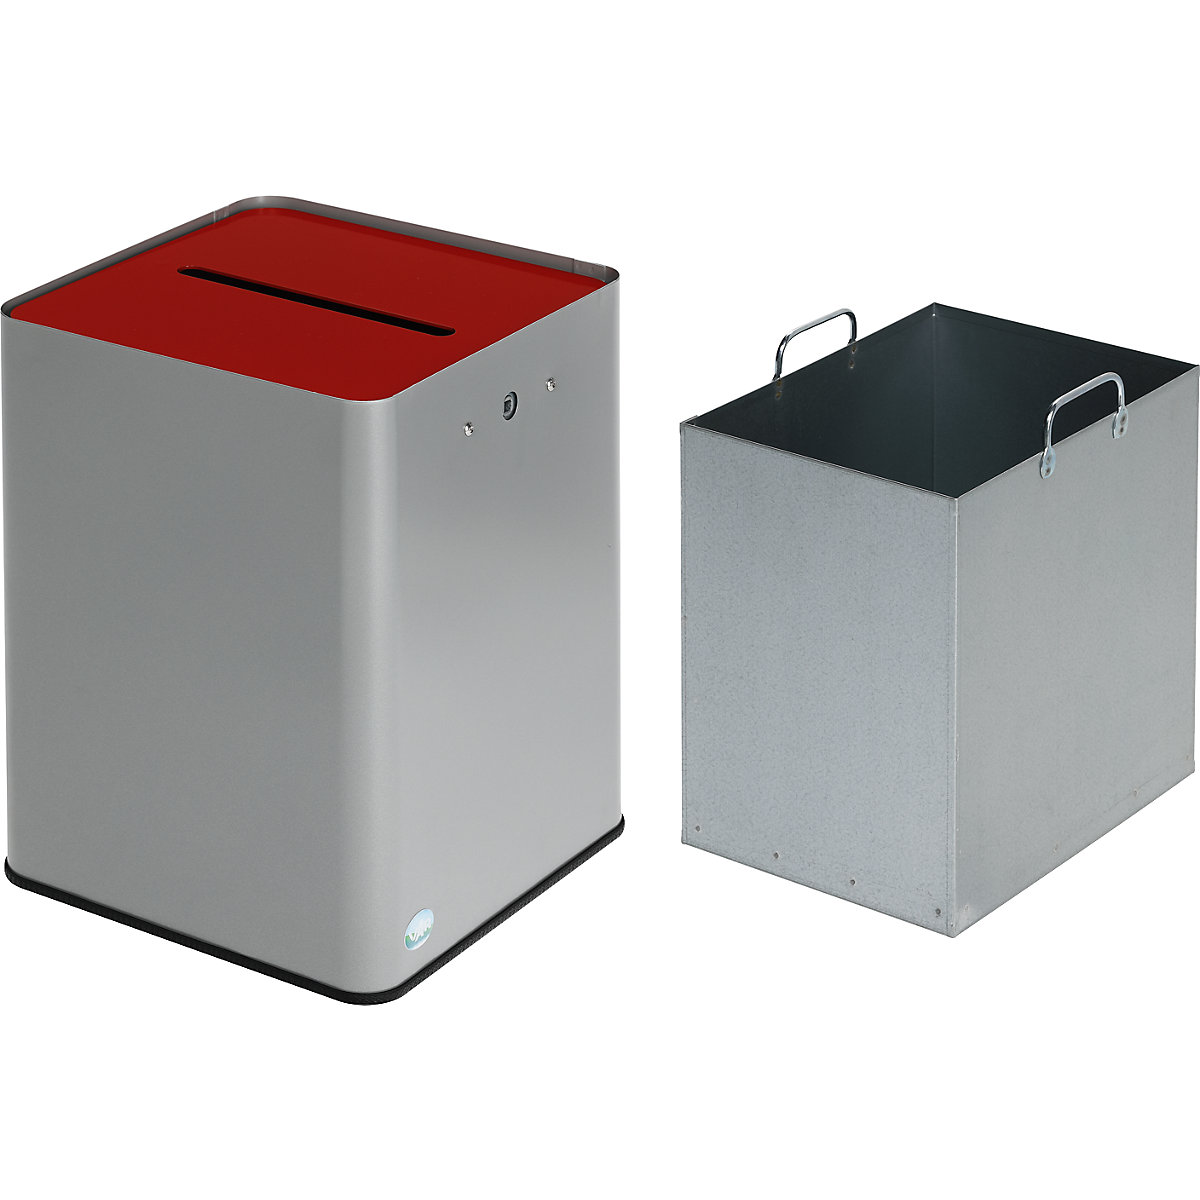 Colector de papel, conforme a la RGPD – VAR, H x A x P 420 x 320 x 320 mm, plata / rojo-4